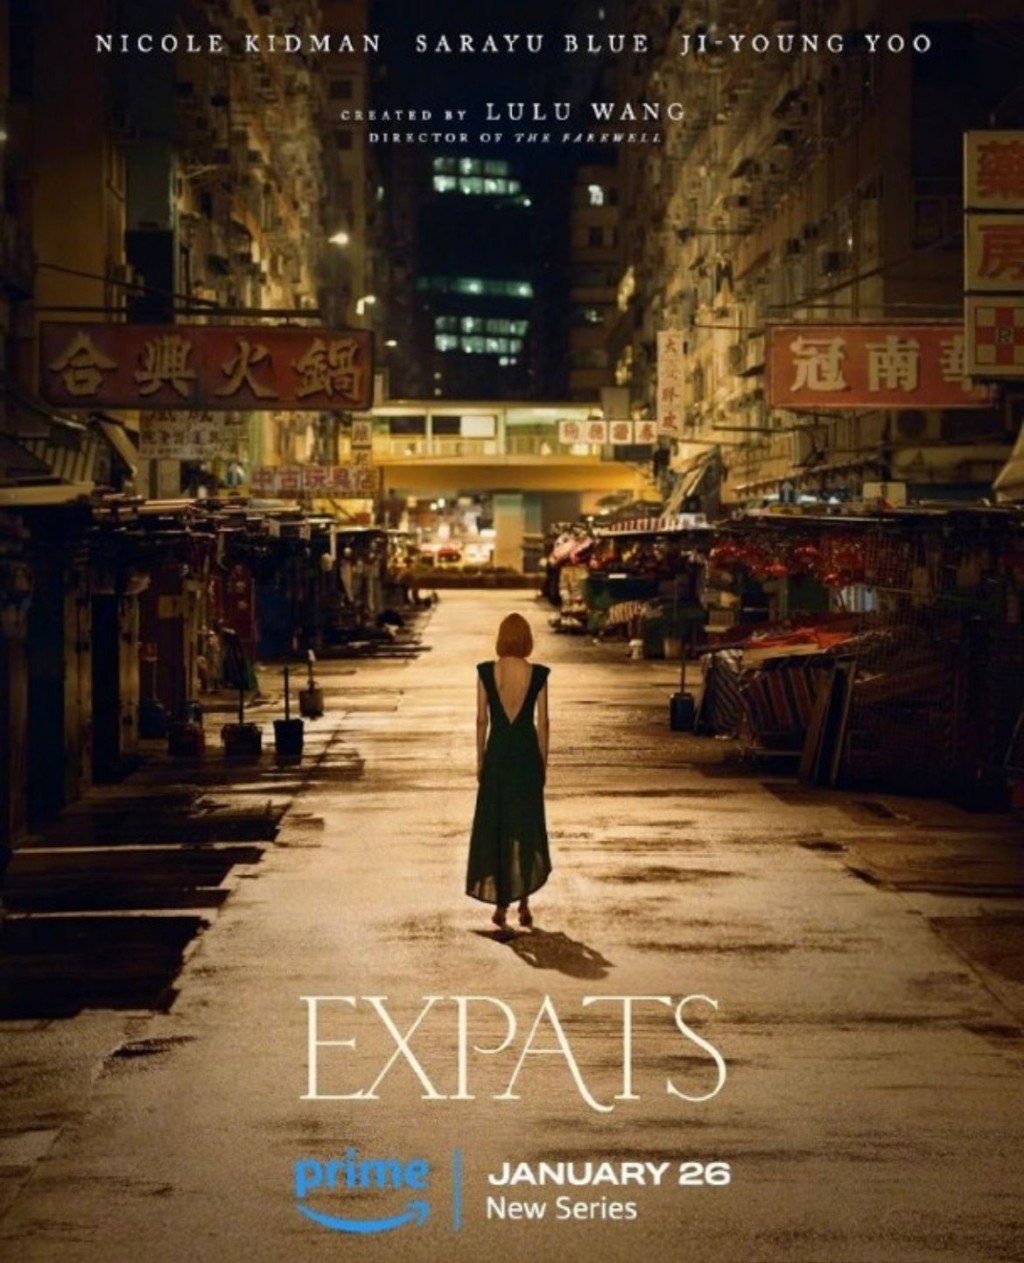 妮歌来港取景新剧《Expats》公开海报及首播日期。